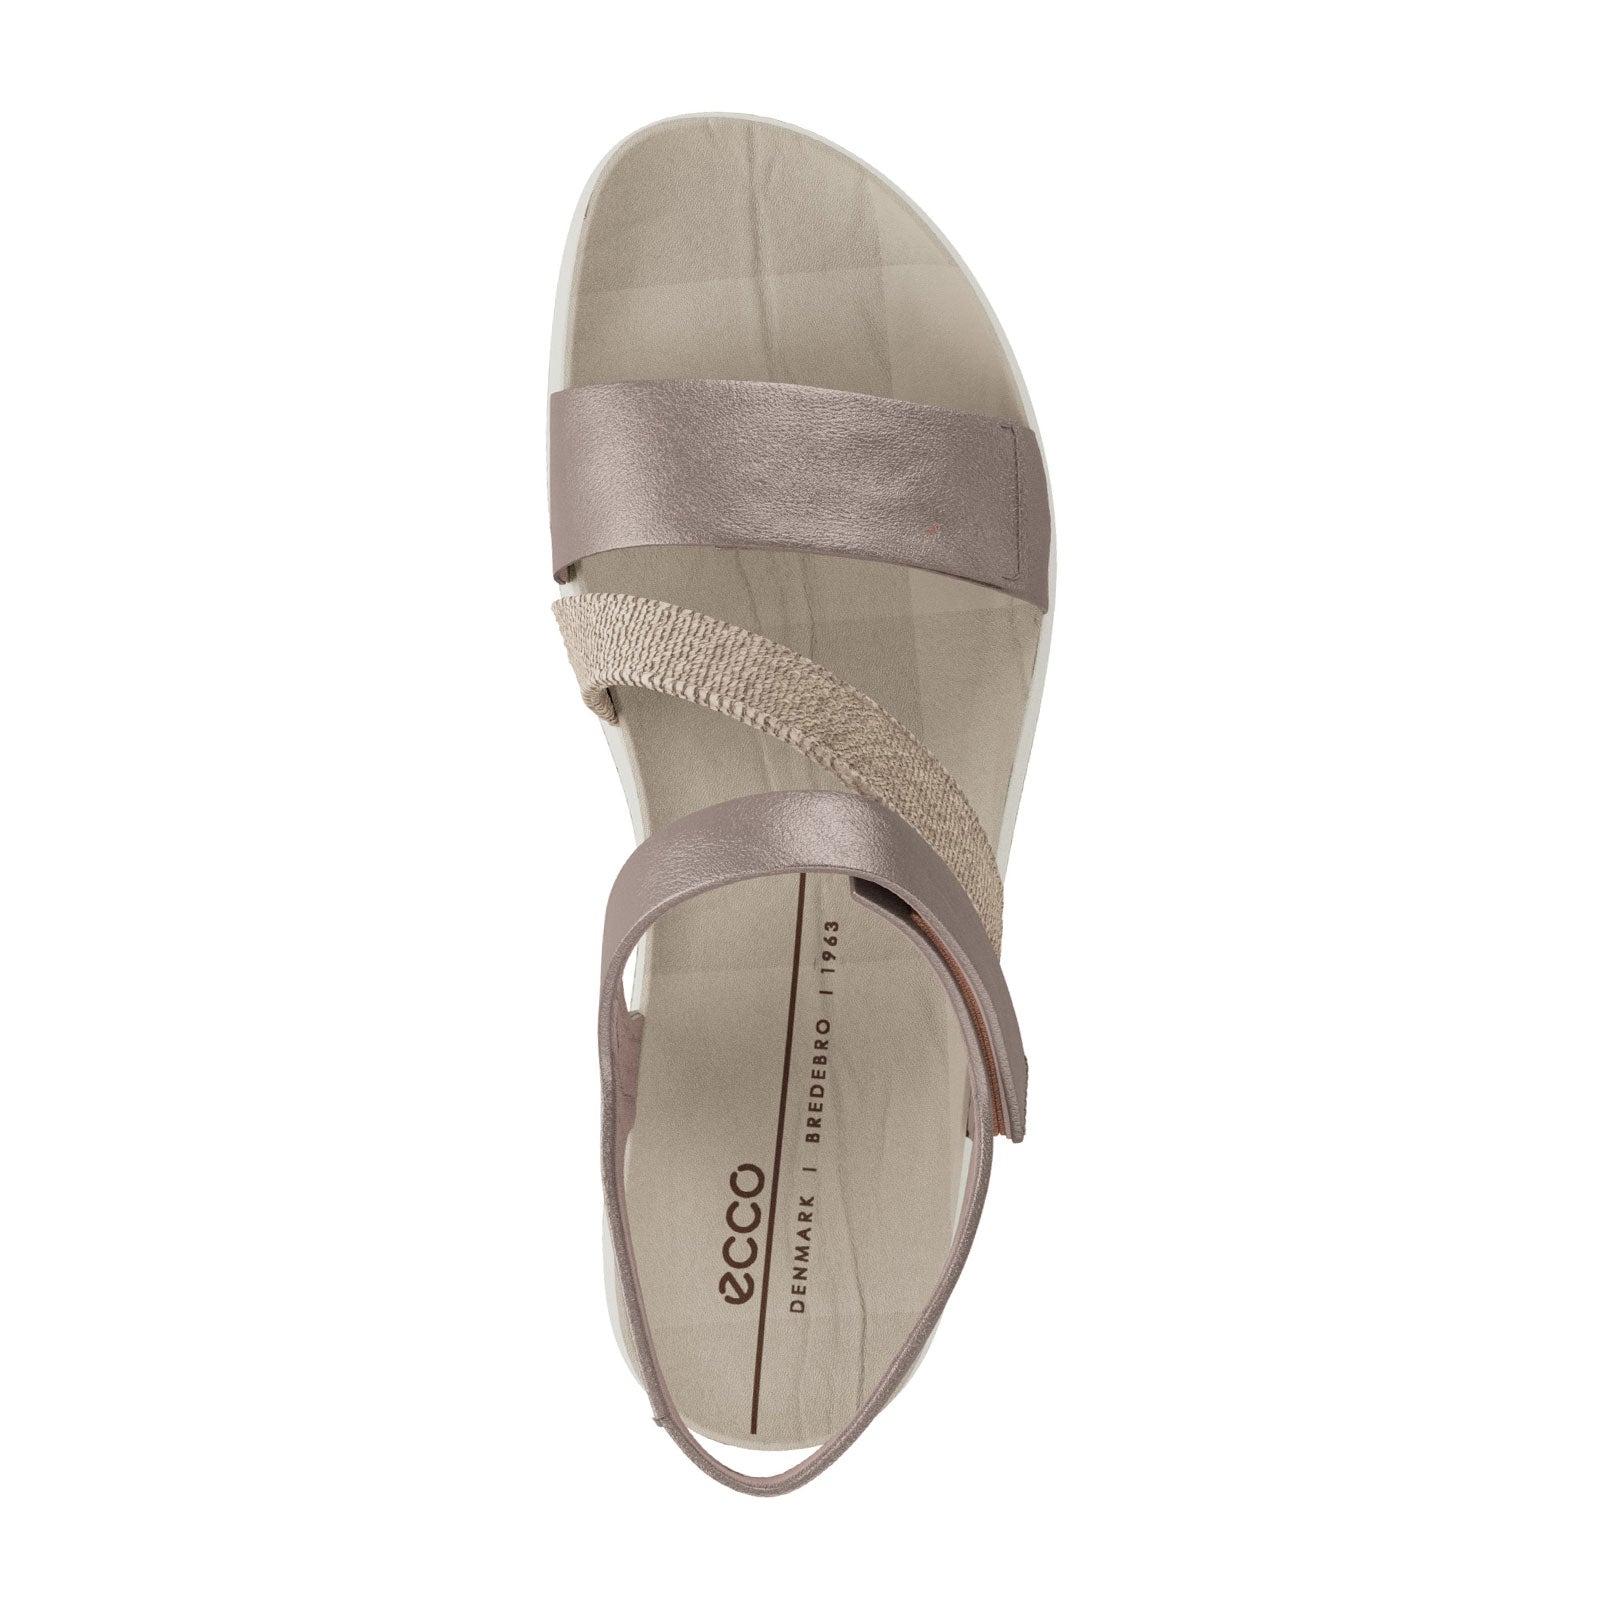 Putte Tæller insekter kompensation Ecco Flowt 2 Band Backstrap Sandal (Women) - Grey Rose Metallic - The Heel  Shoe Fitters